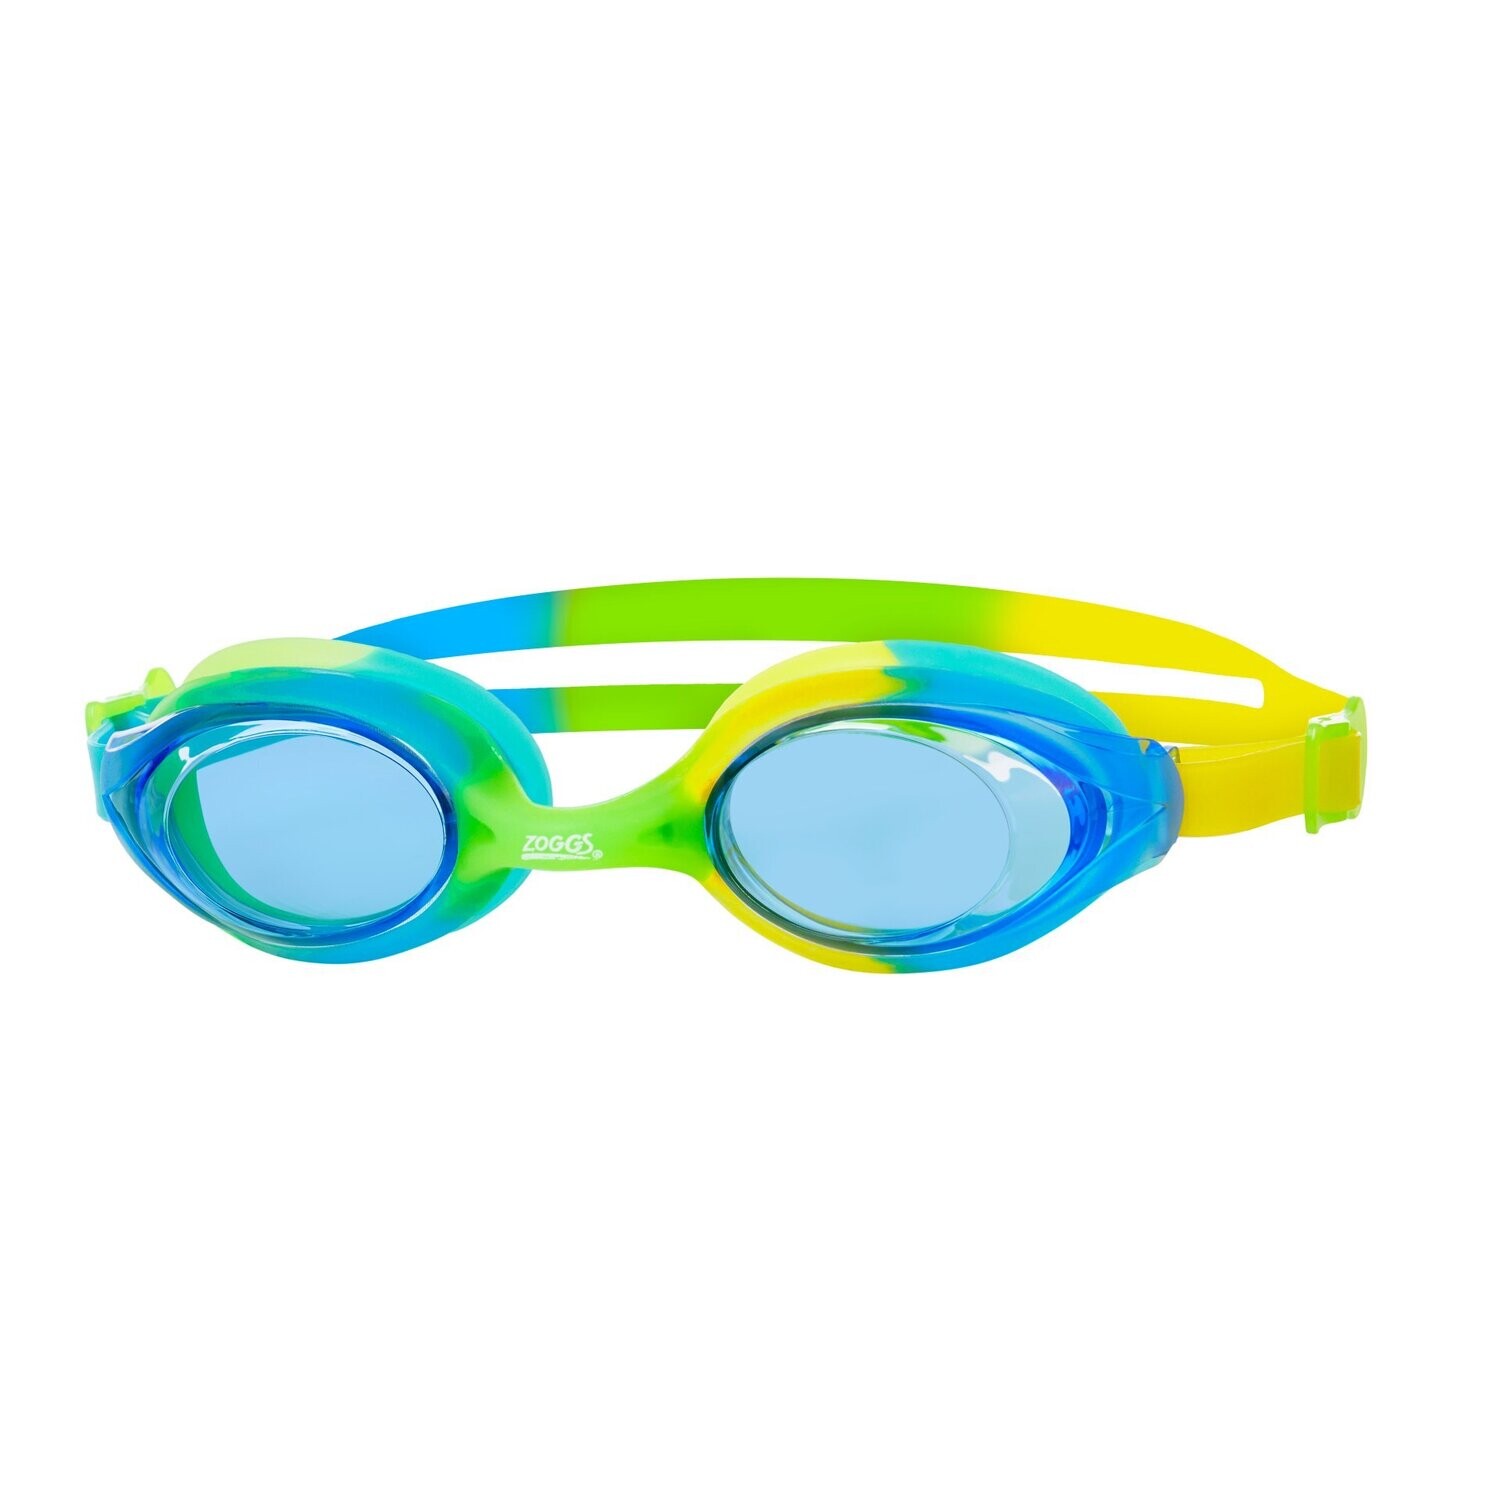 NEW zoggs bondi junior goggles, colour: blue and green